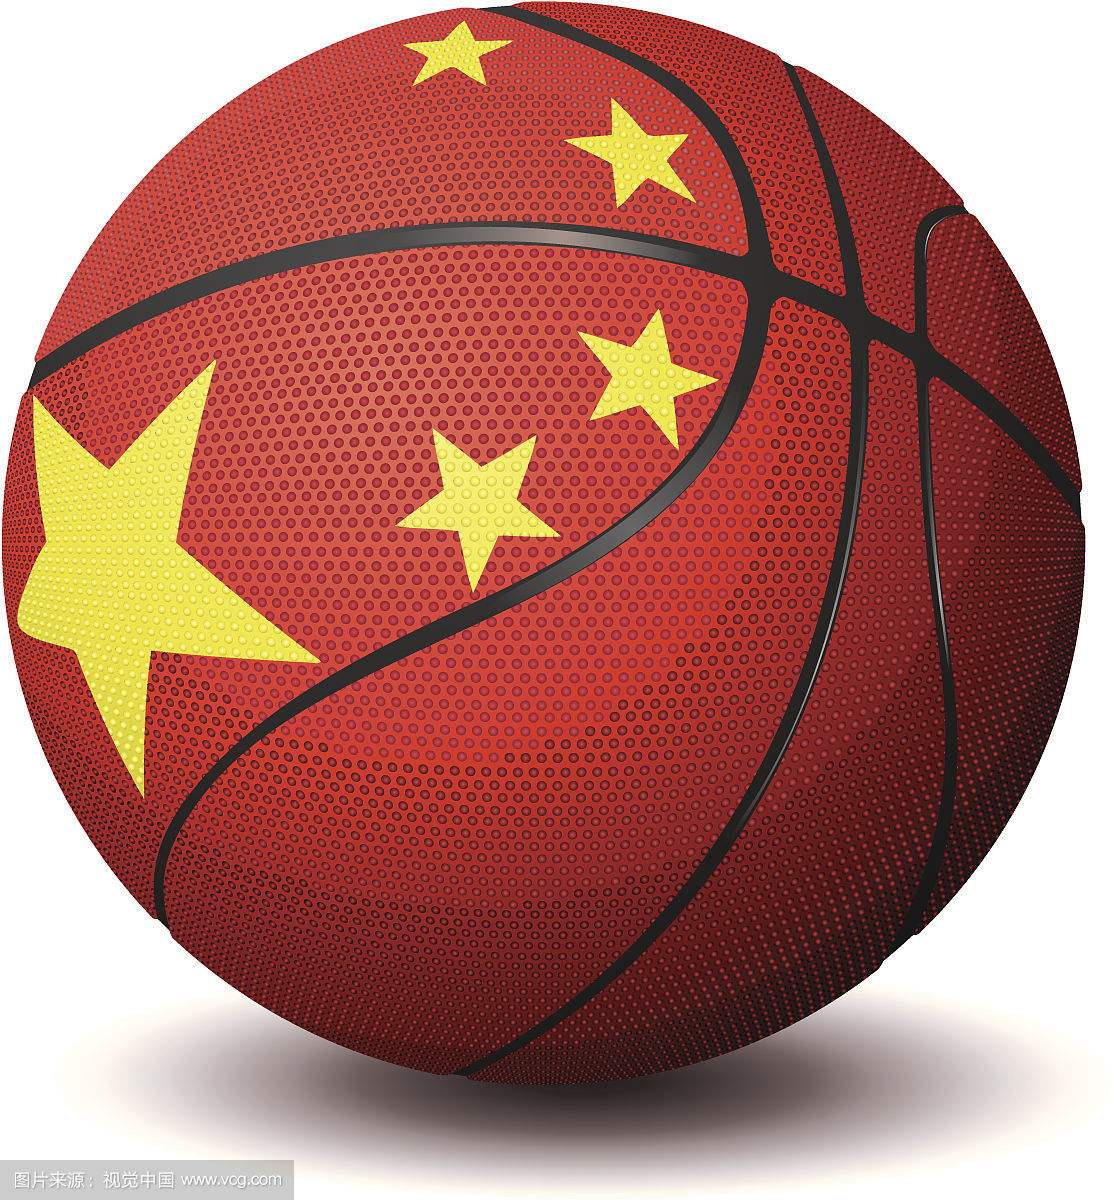 中國籃球頂級聯賽冠軍